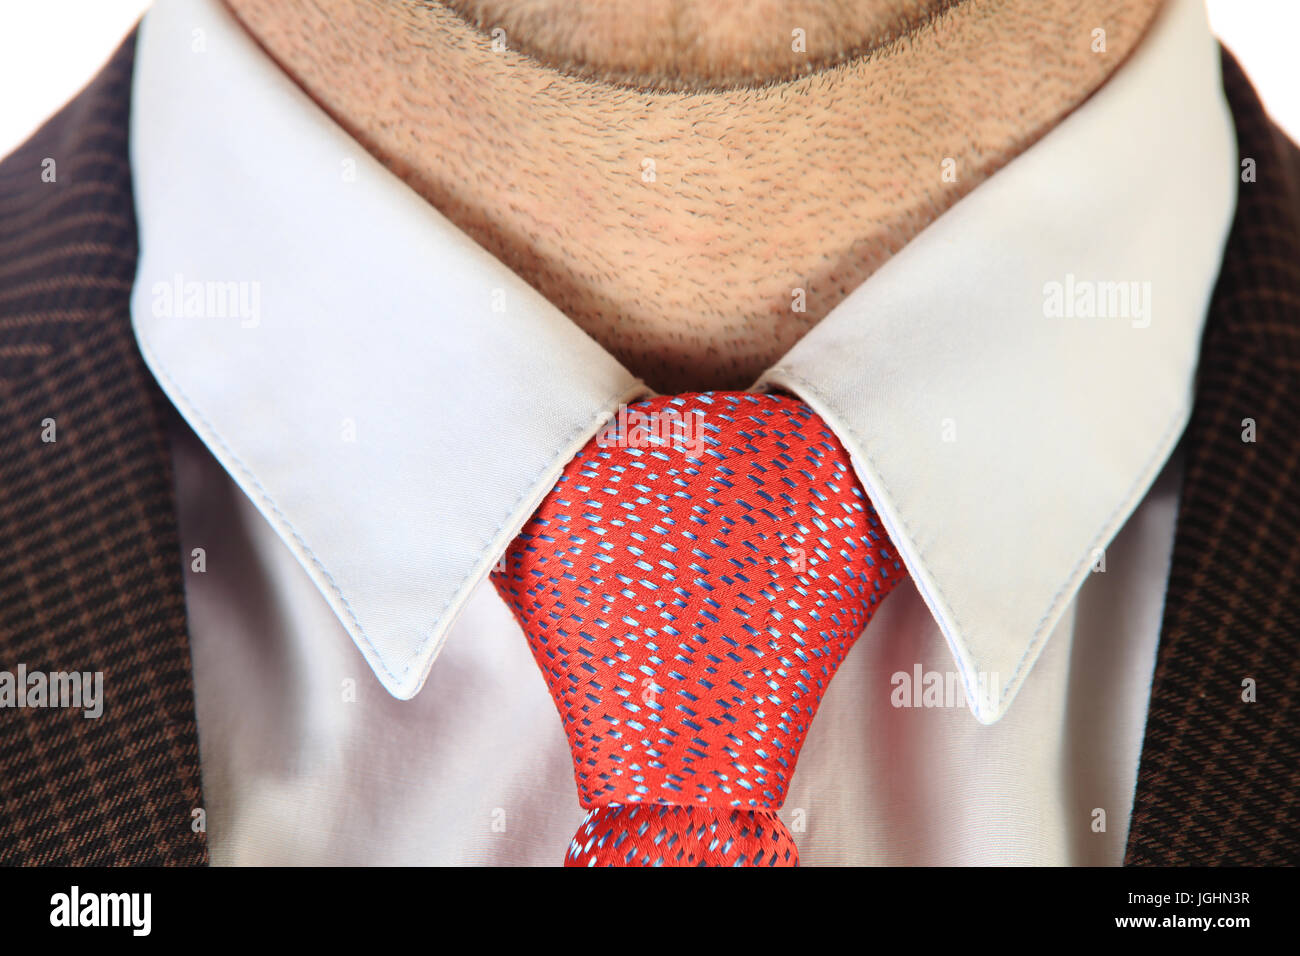 Cravatta rossa close-up. Cravatta rossa su una camicia bianca su imprenditore unshaved collo. Foto Stock